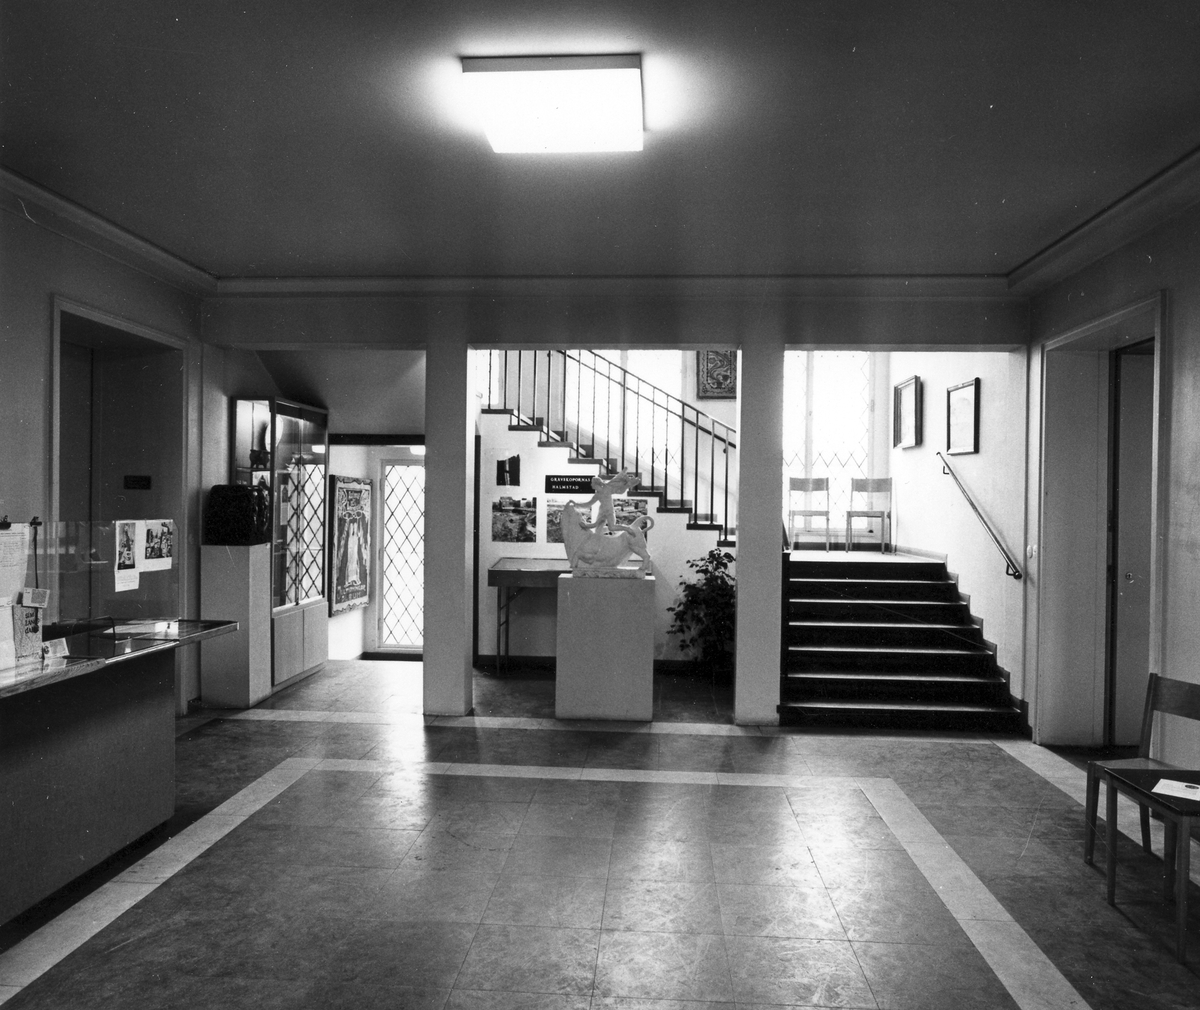 Museets entréhall, numera gamla entréhallen.
Foto 1 från öster.
Foto 2 från västnordväst.
Foto 3 från sydväst.